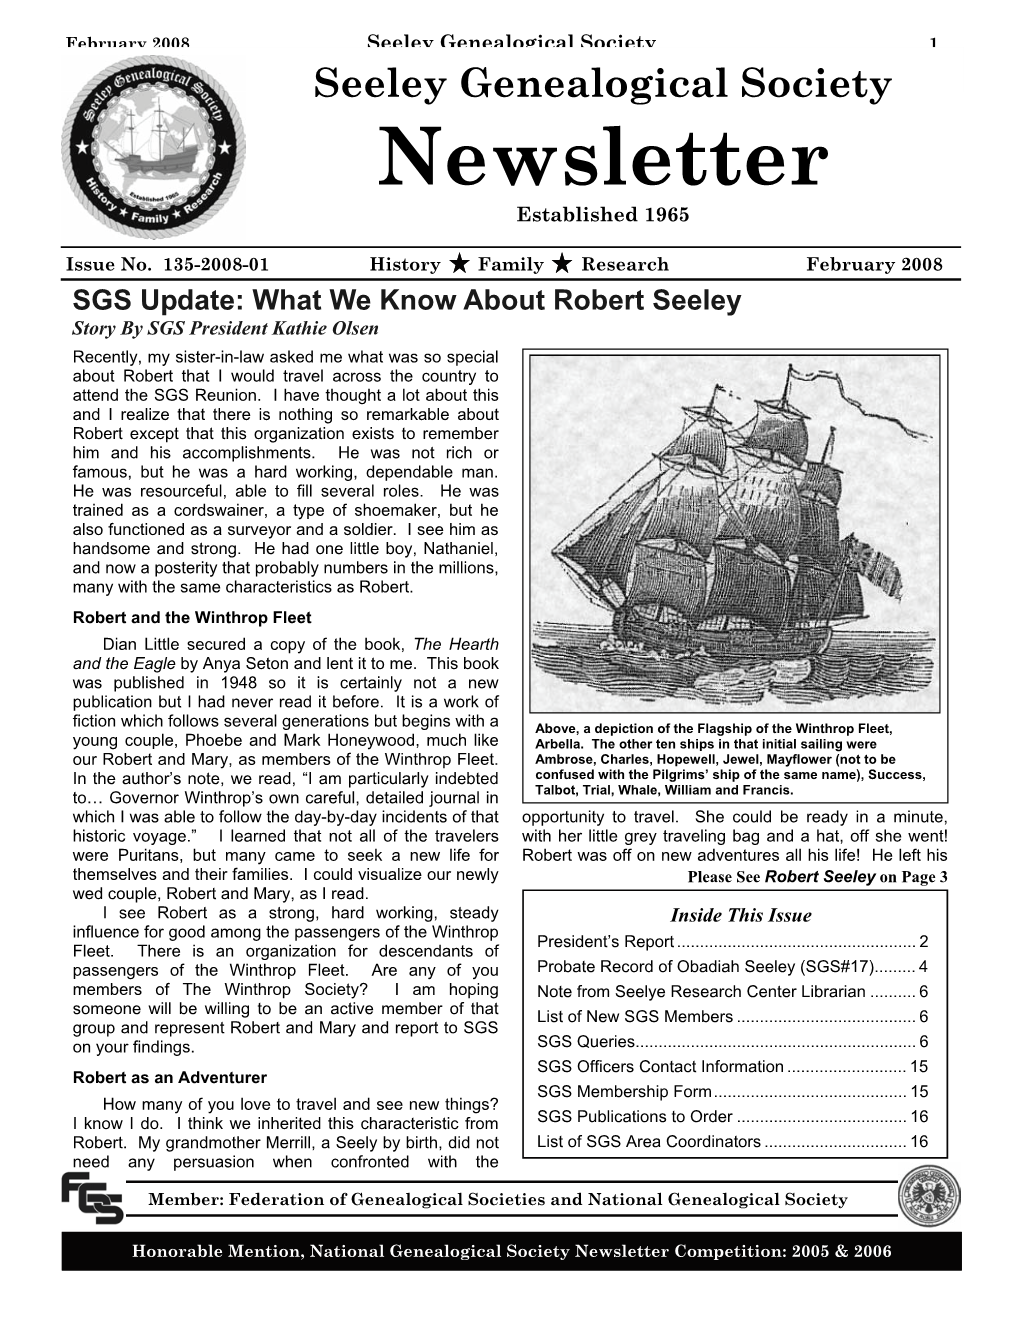 Newsletter Established 1965